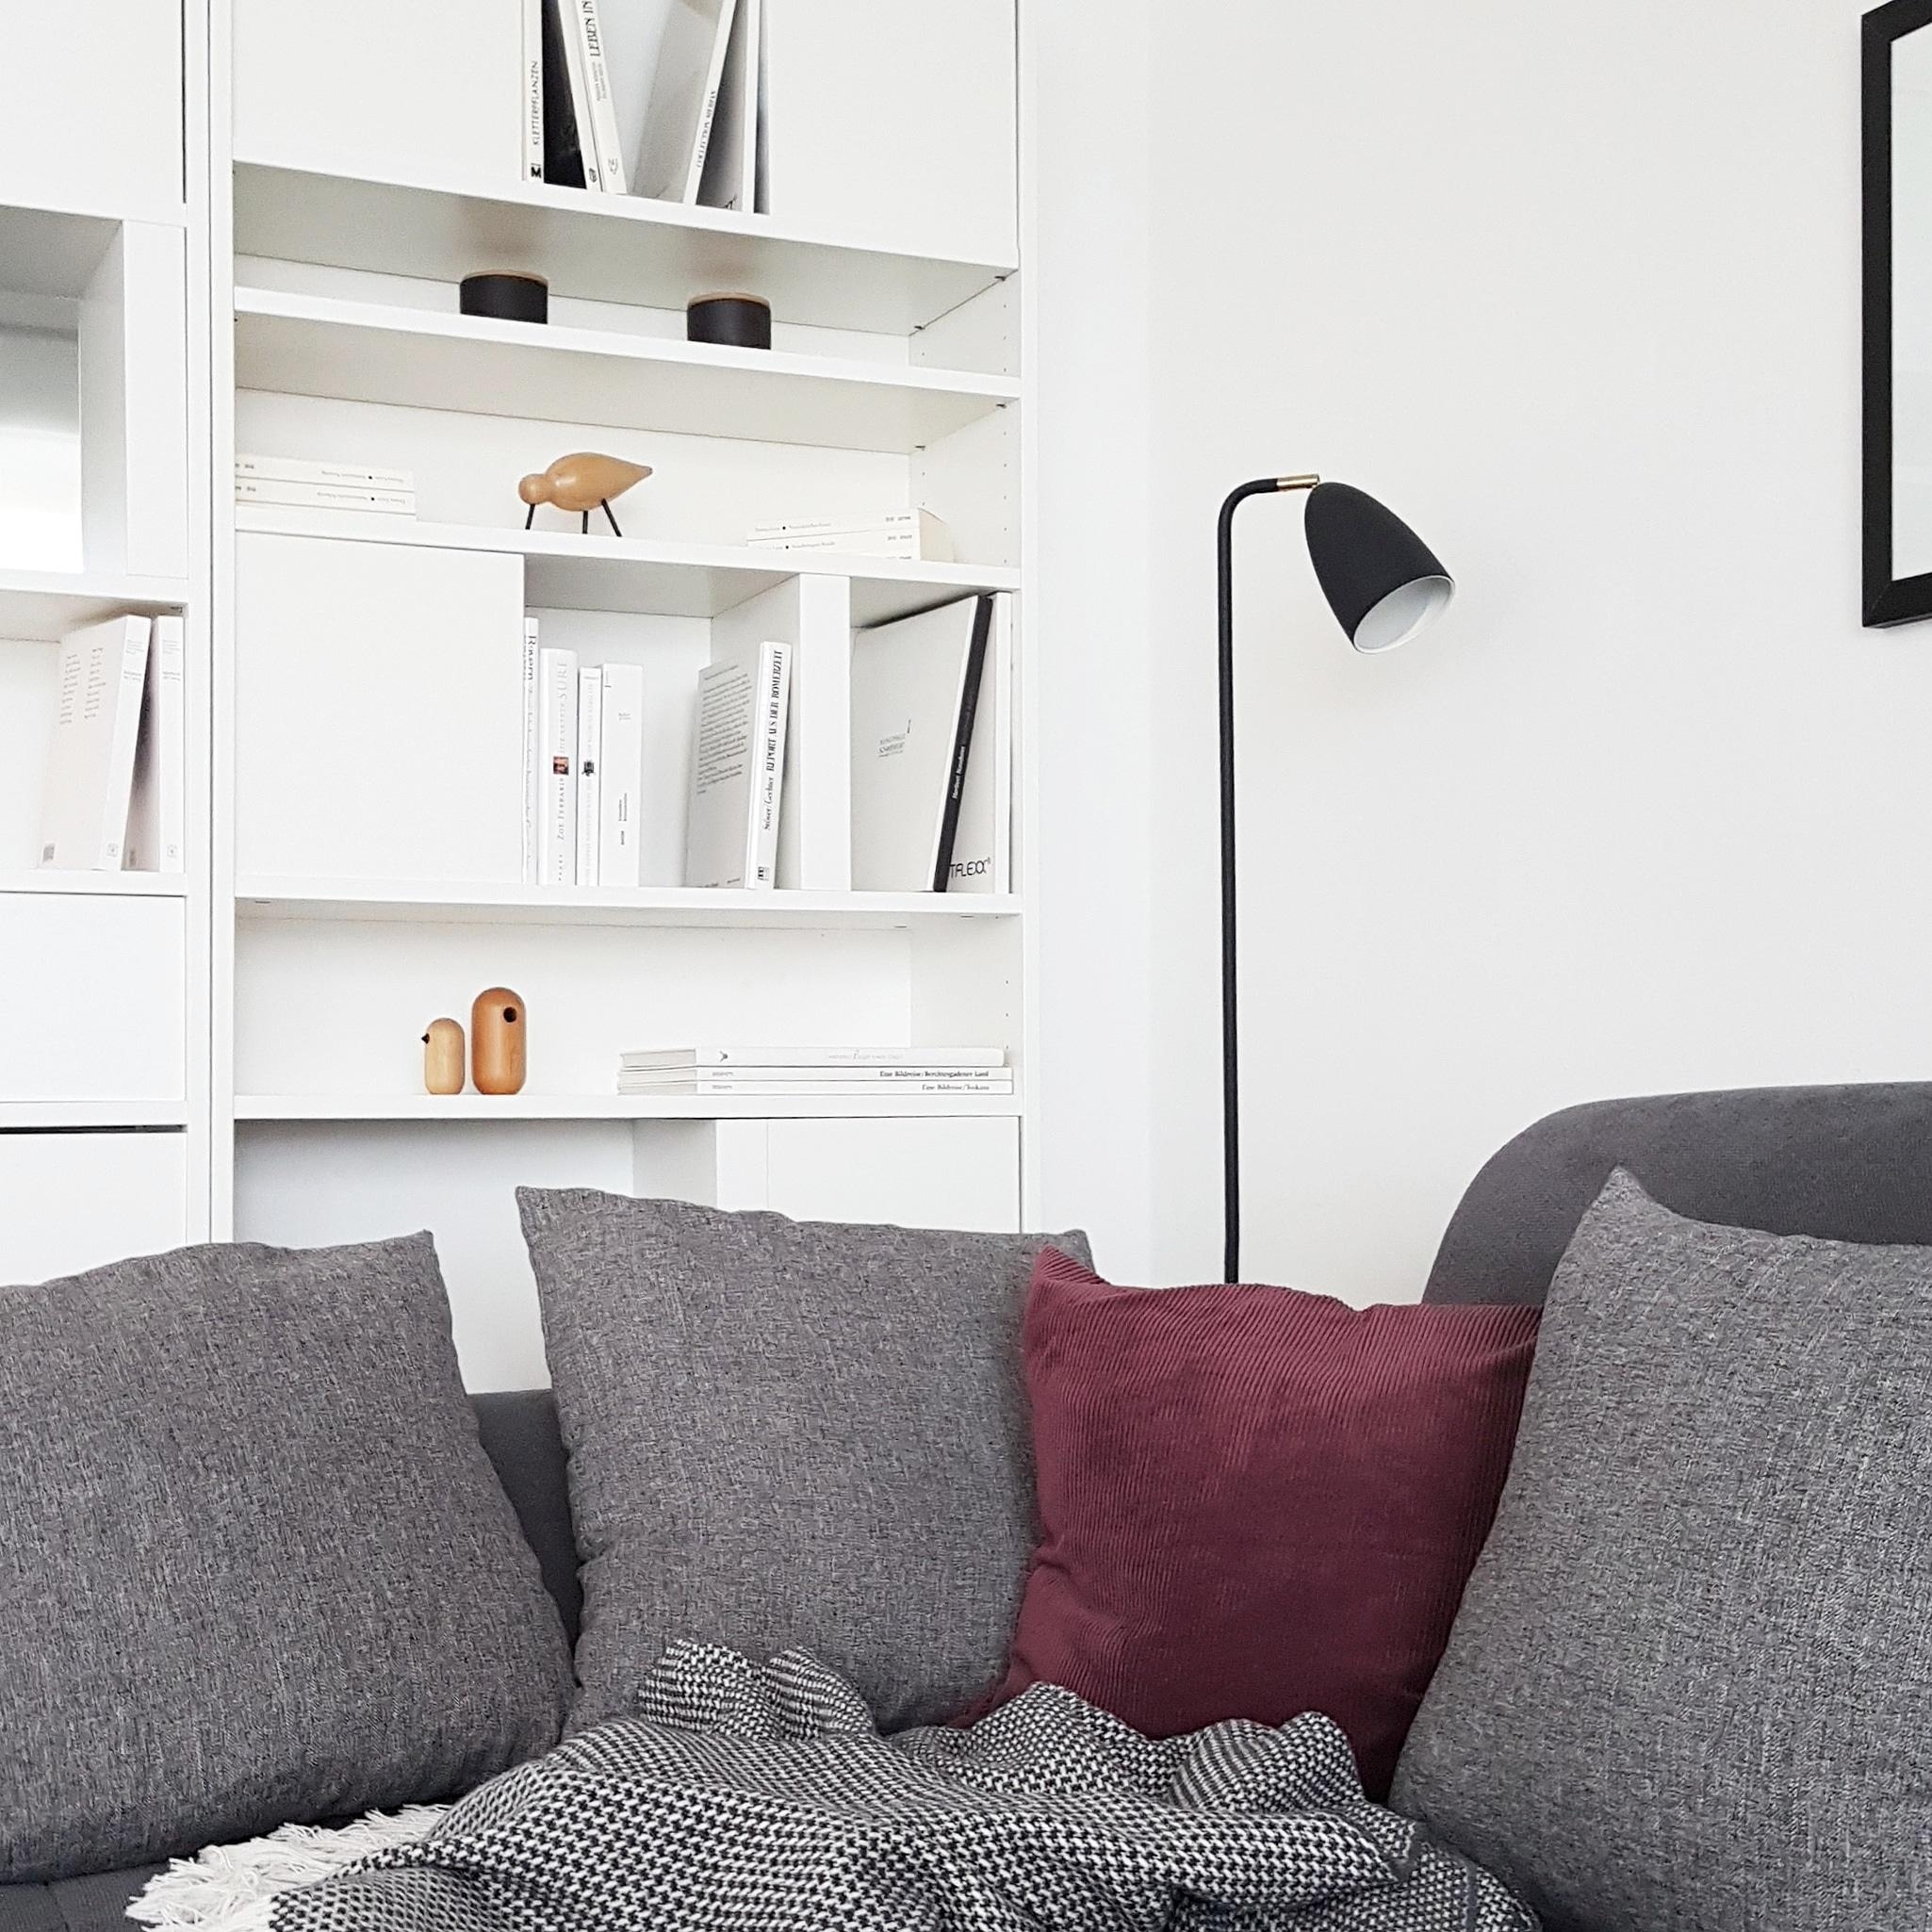 #wohnzimmer #couch #sofa #leselampe #hygge #scandinavischstyle 